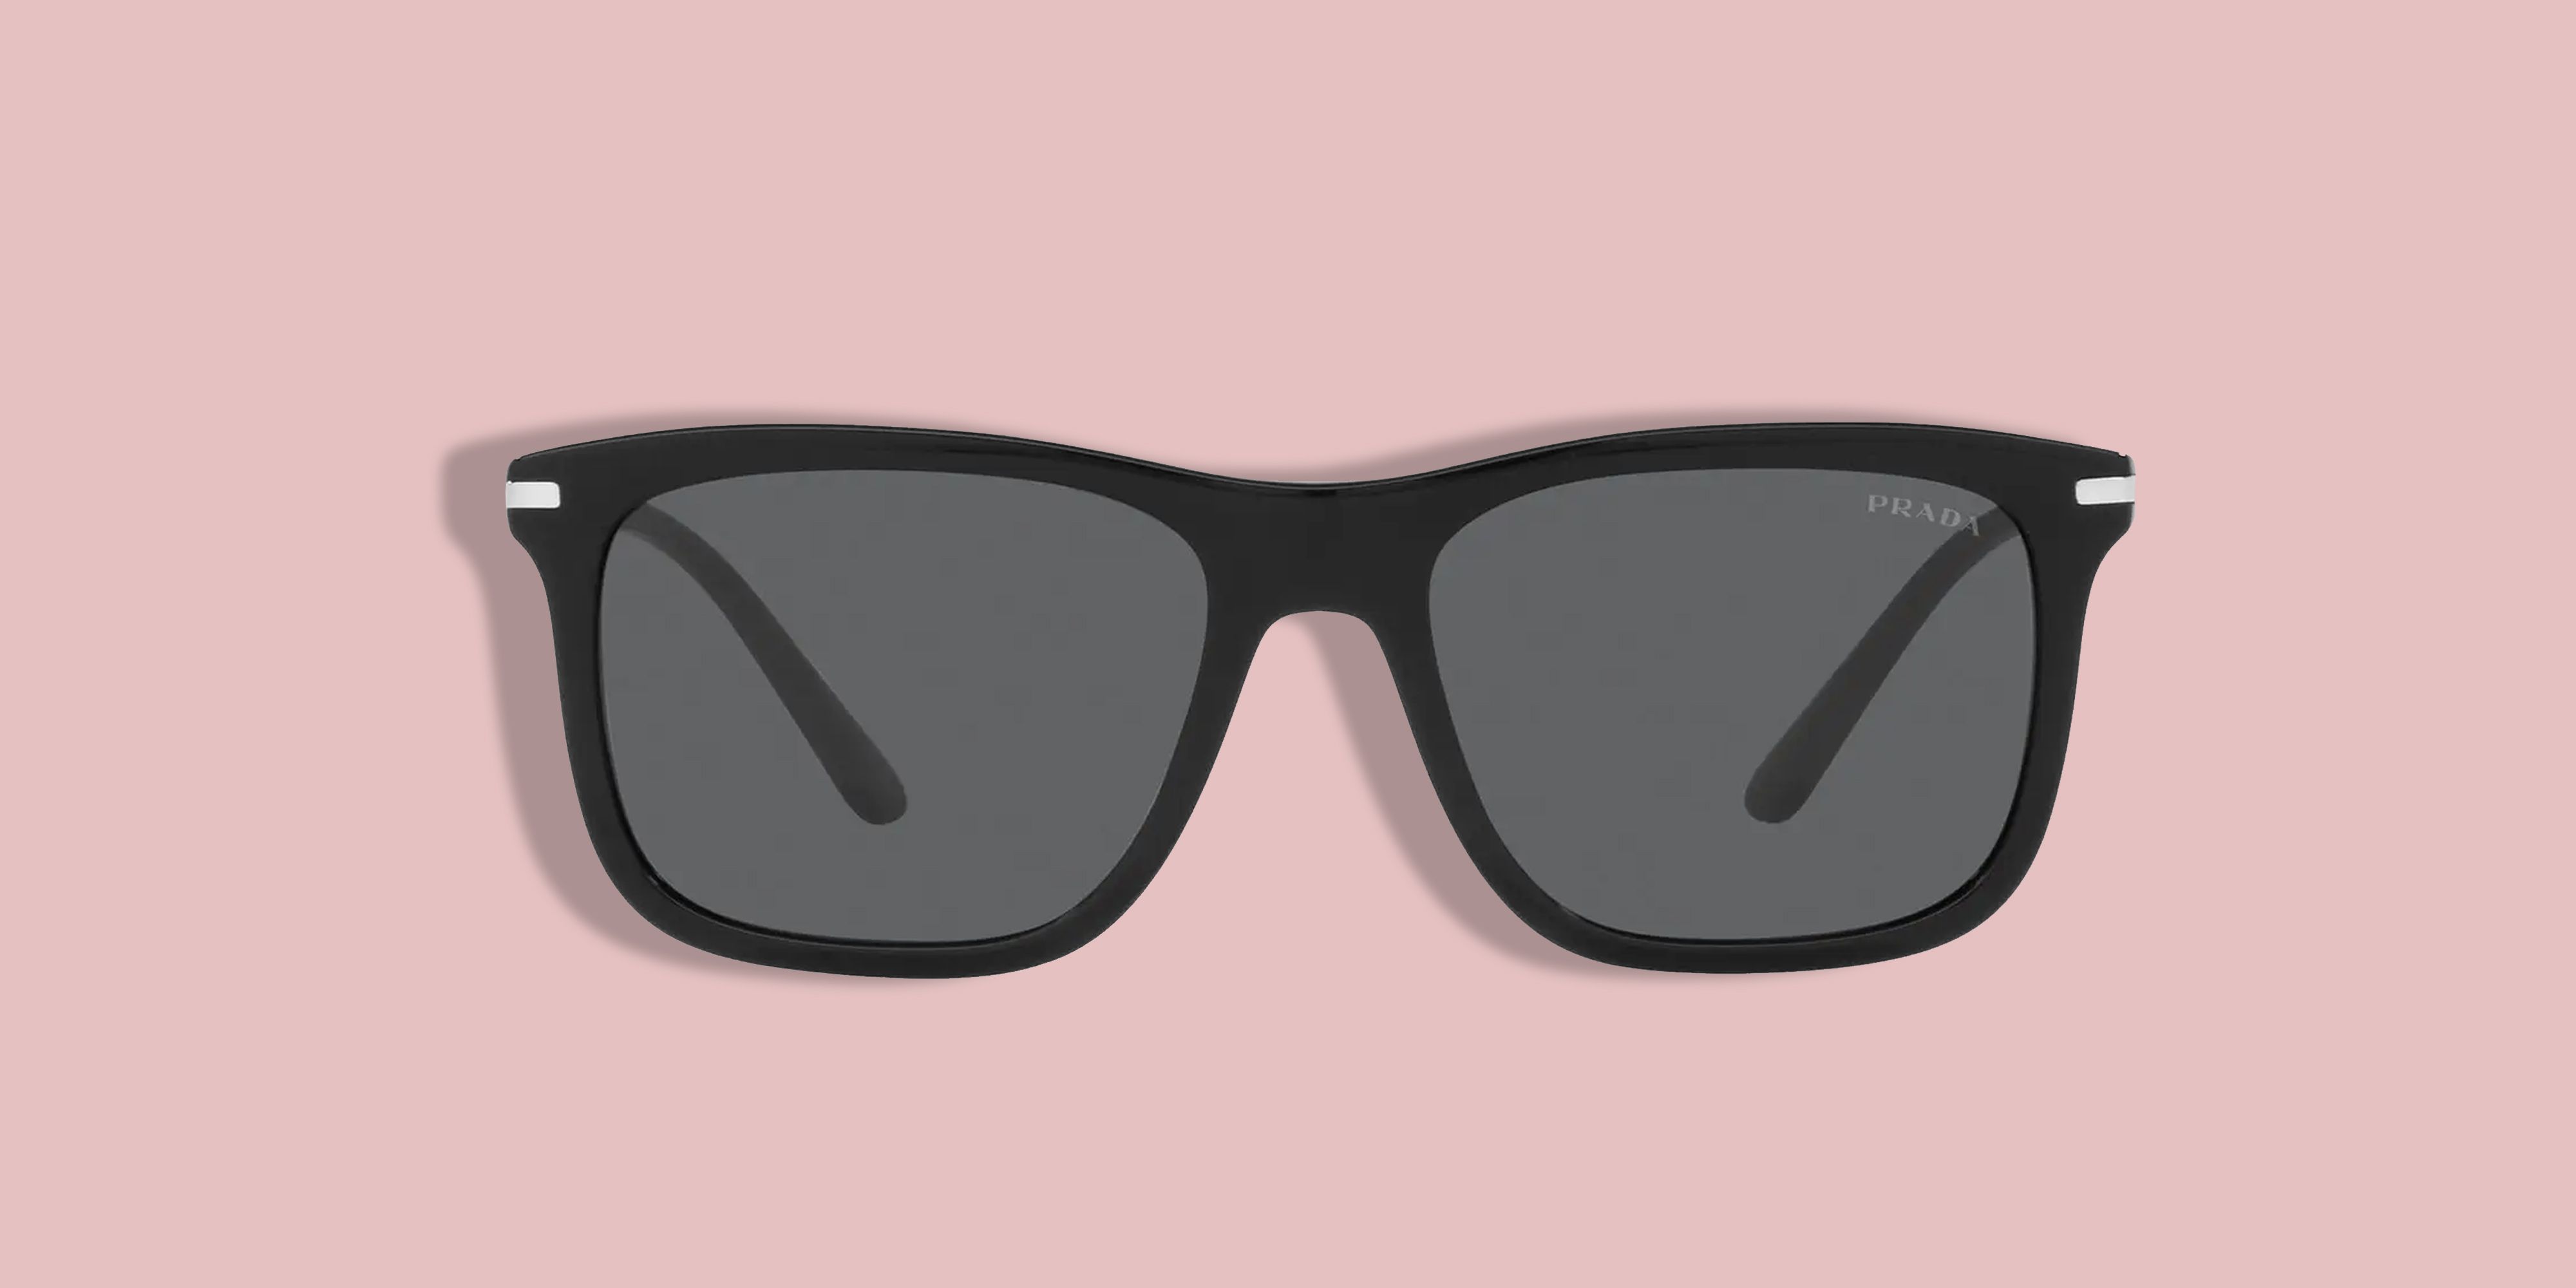 8 Best Sunglasses for Men, Men's Designer Sunglasses 2020